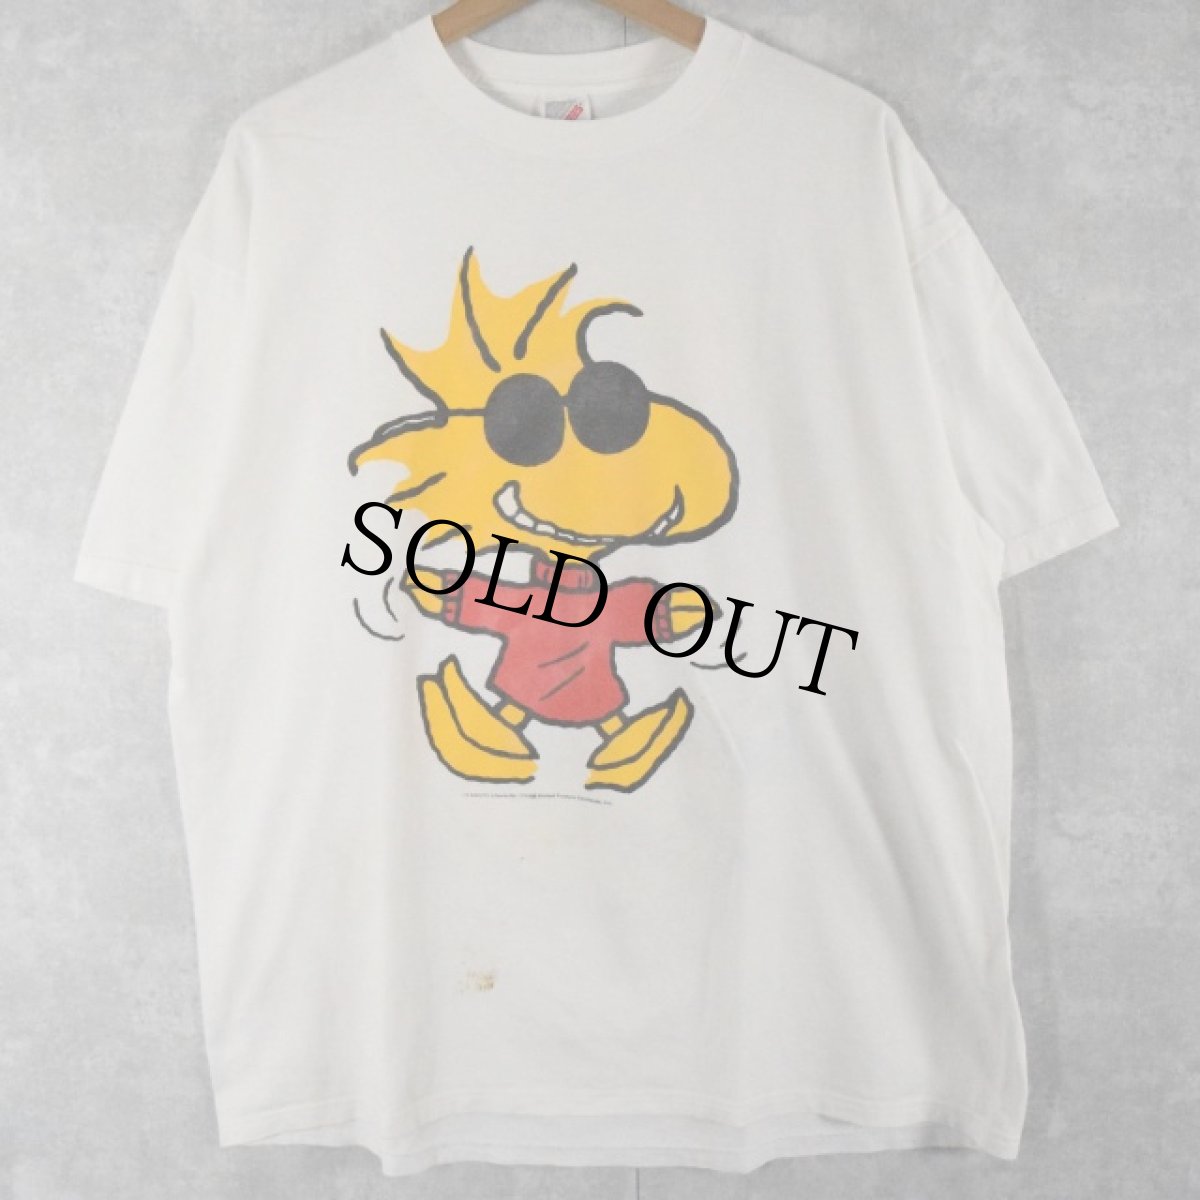 画像1: 90's PEANUTS USA製 "SNOOPY × WOODSTOCK" キャラクターTシャツ XL (1)